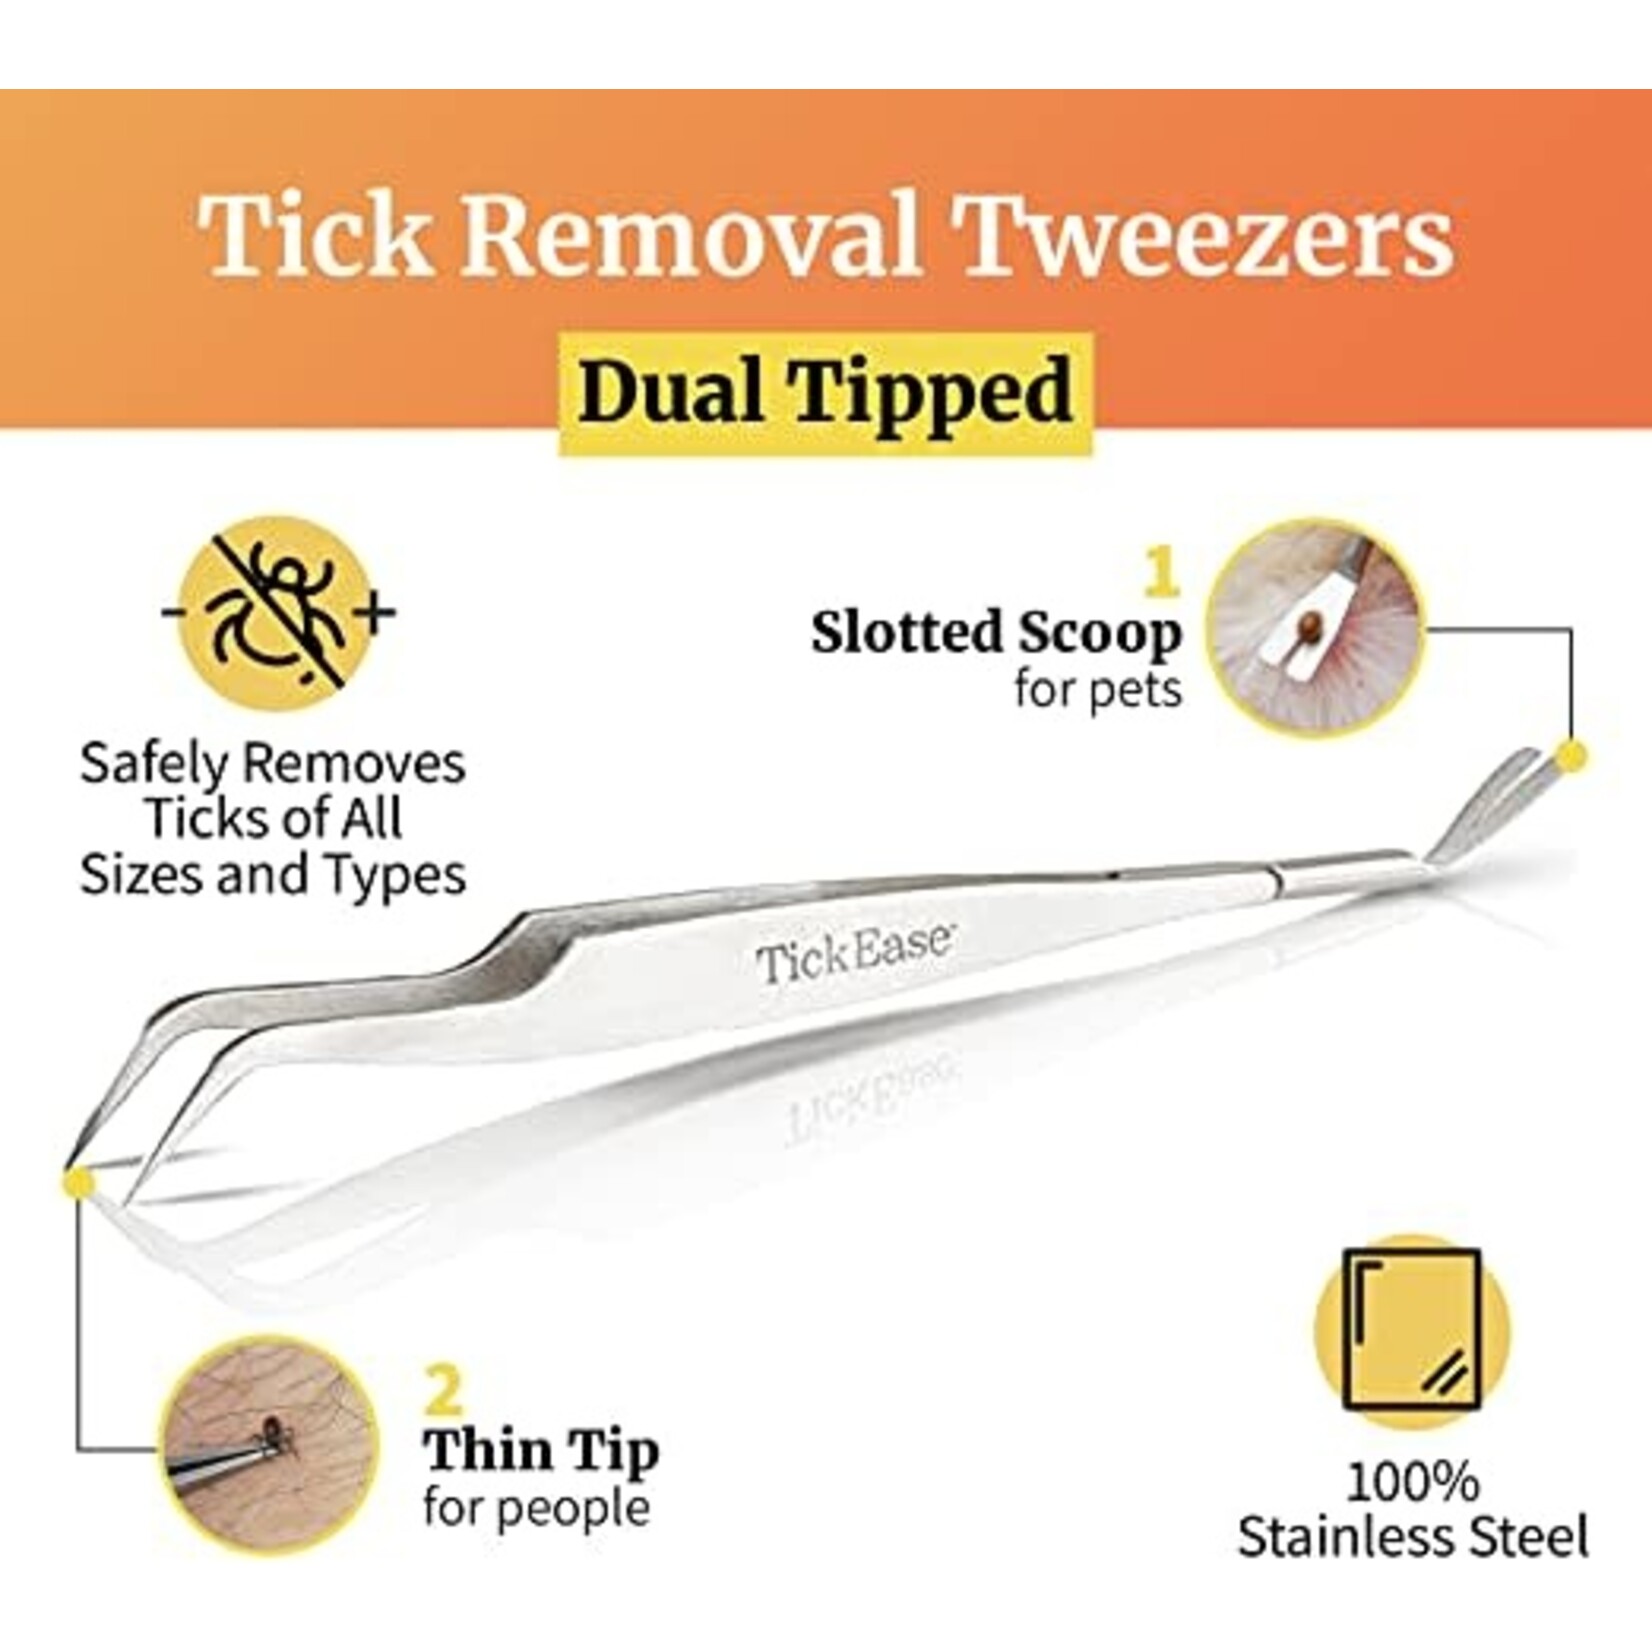 TickEase Tick Removal Tweezers